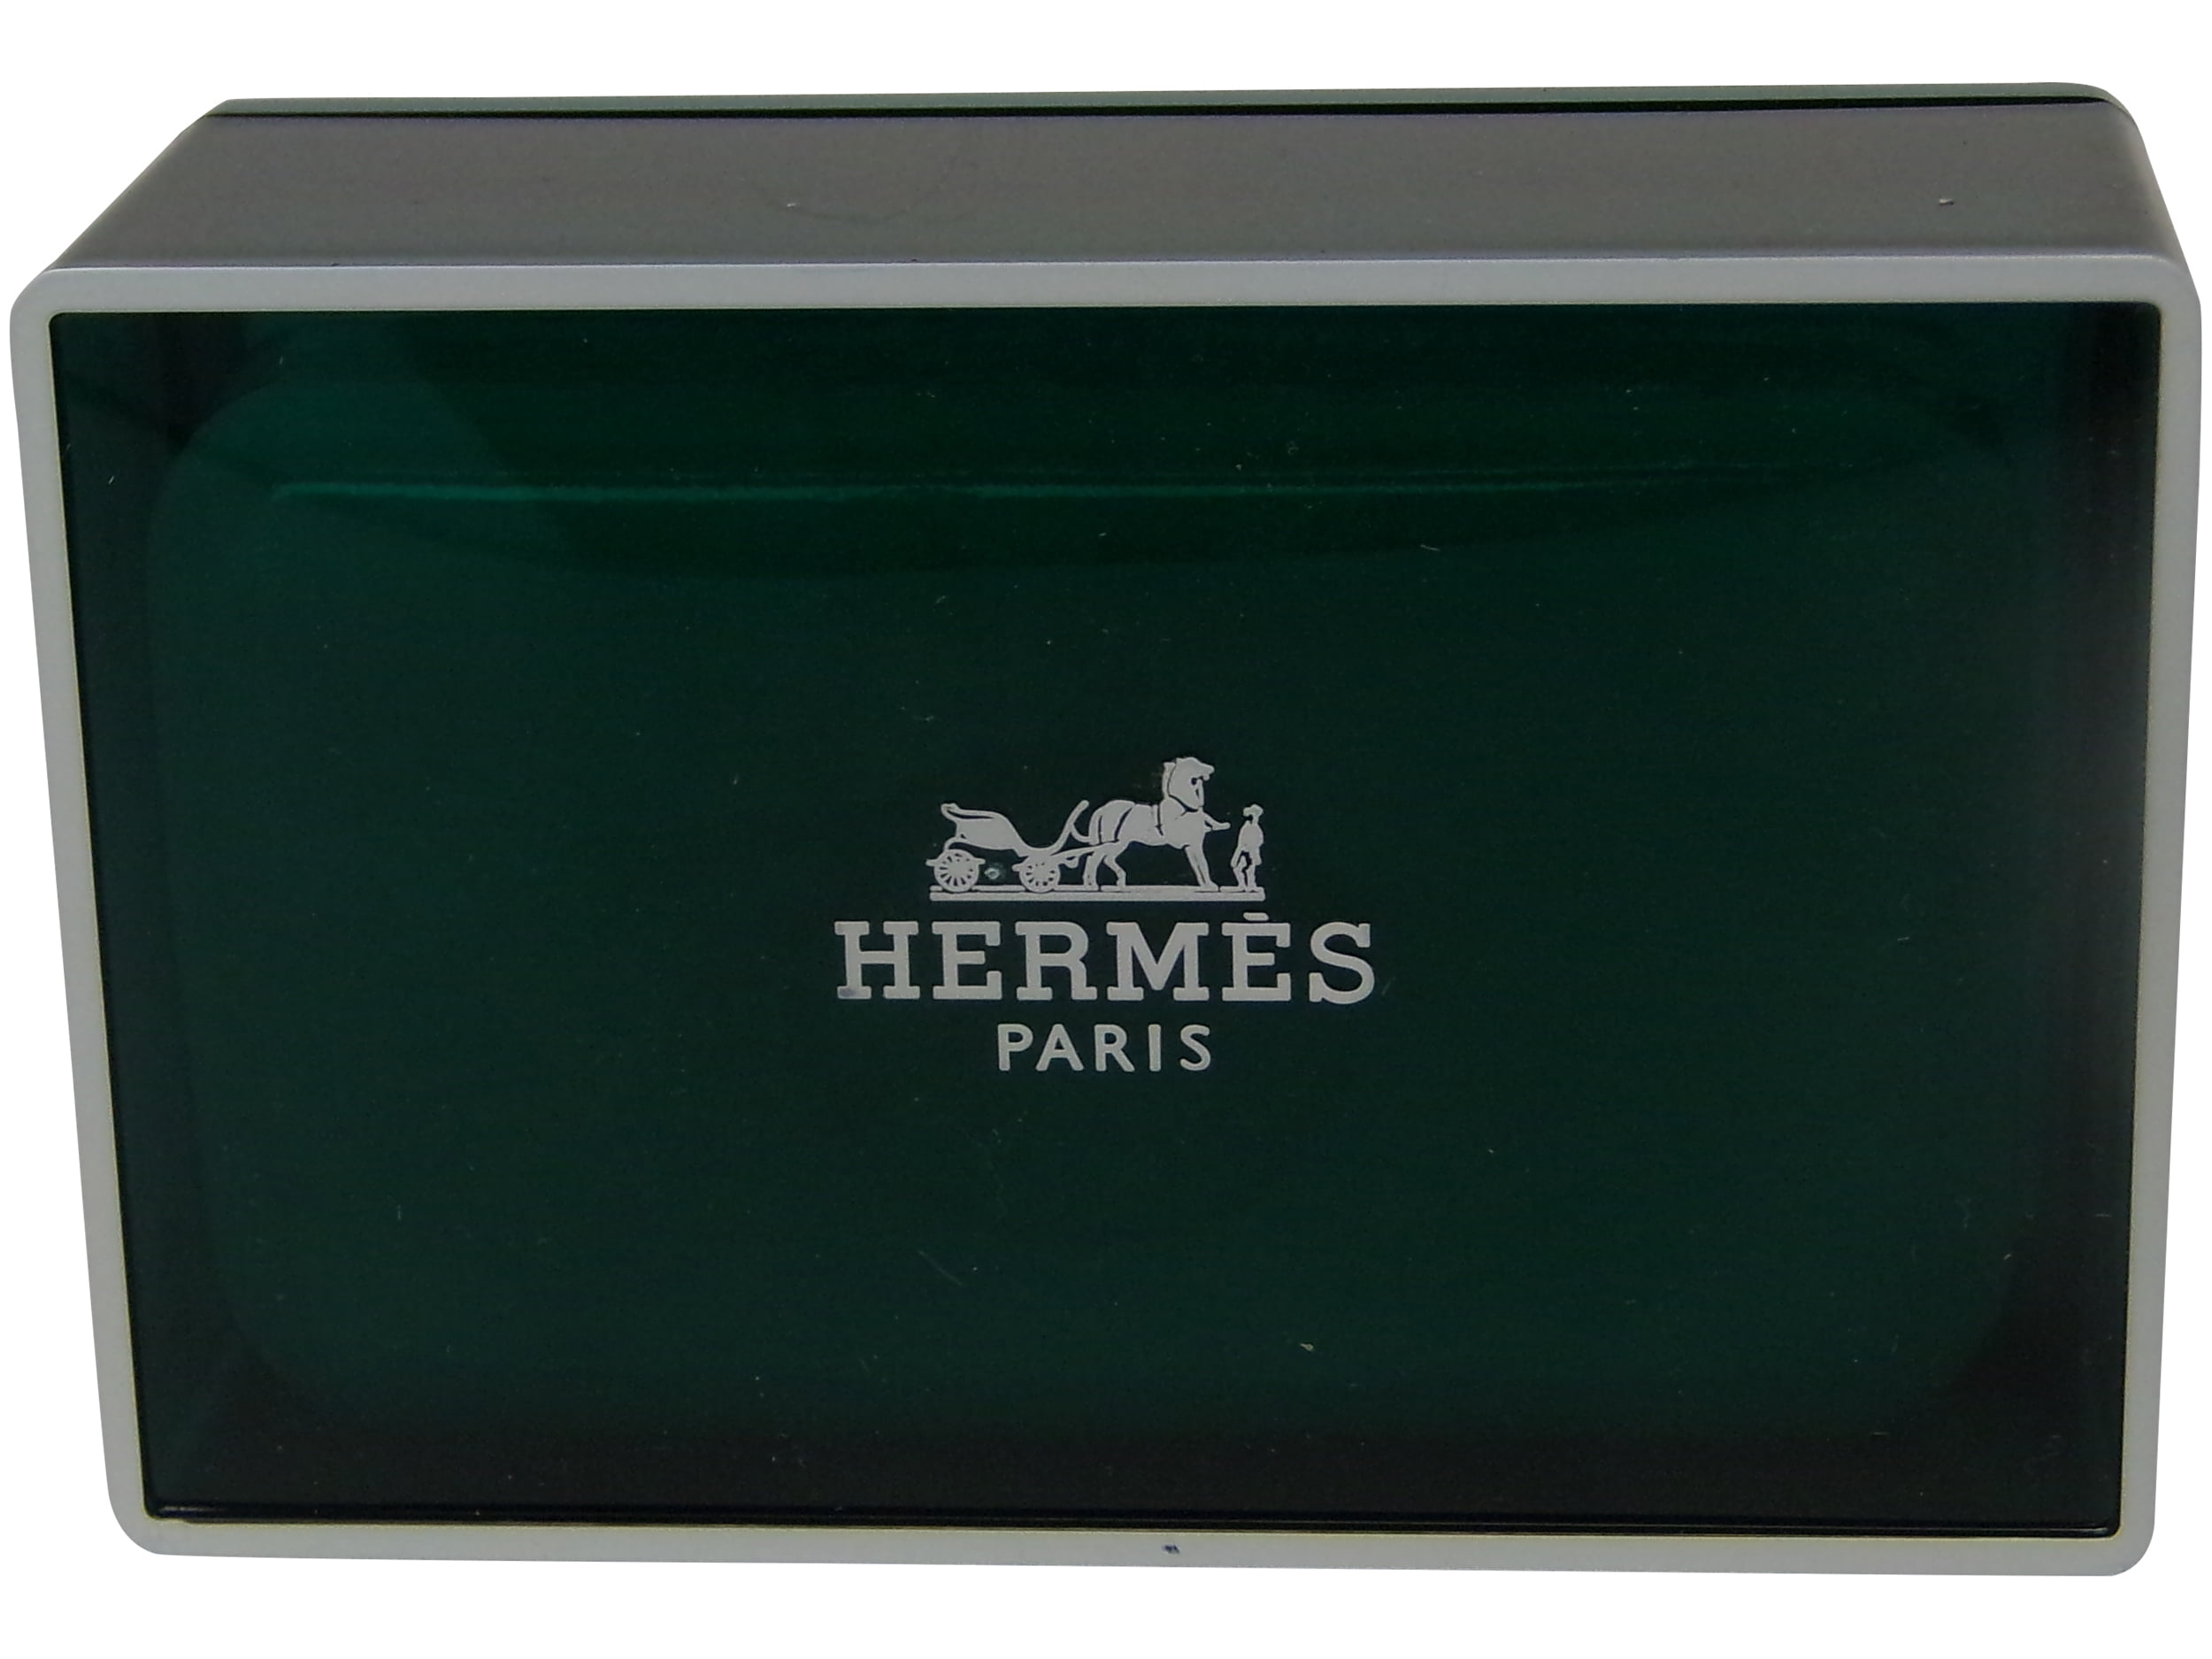 hermes soap price